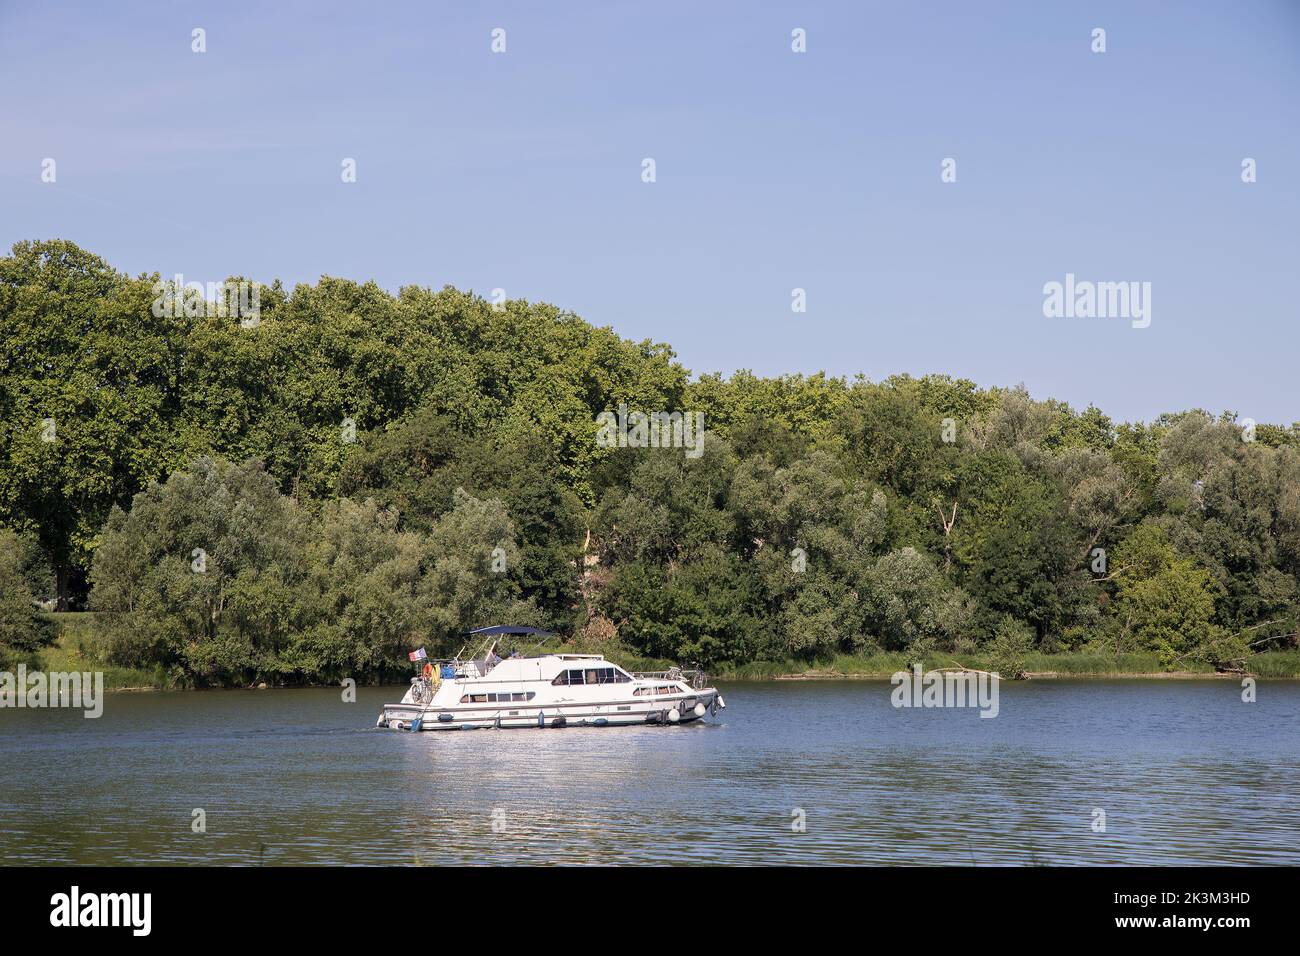 Barco de recreo en el río Saone, Jassans-Riottier, Francia Foto de stock